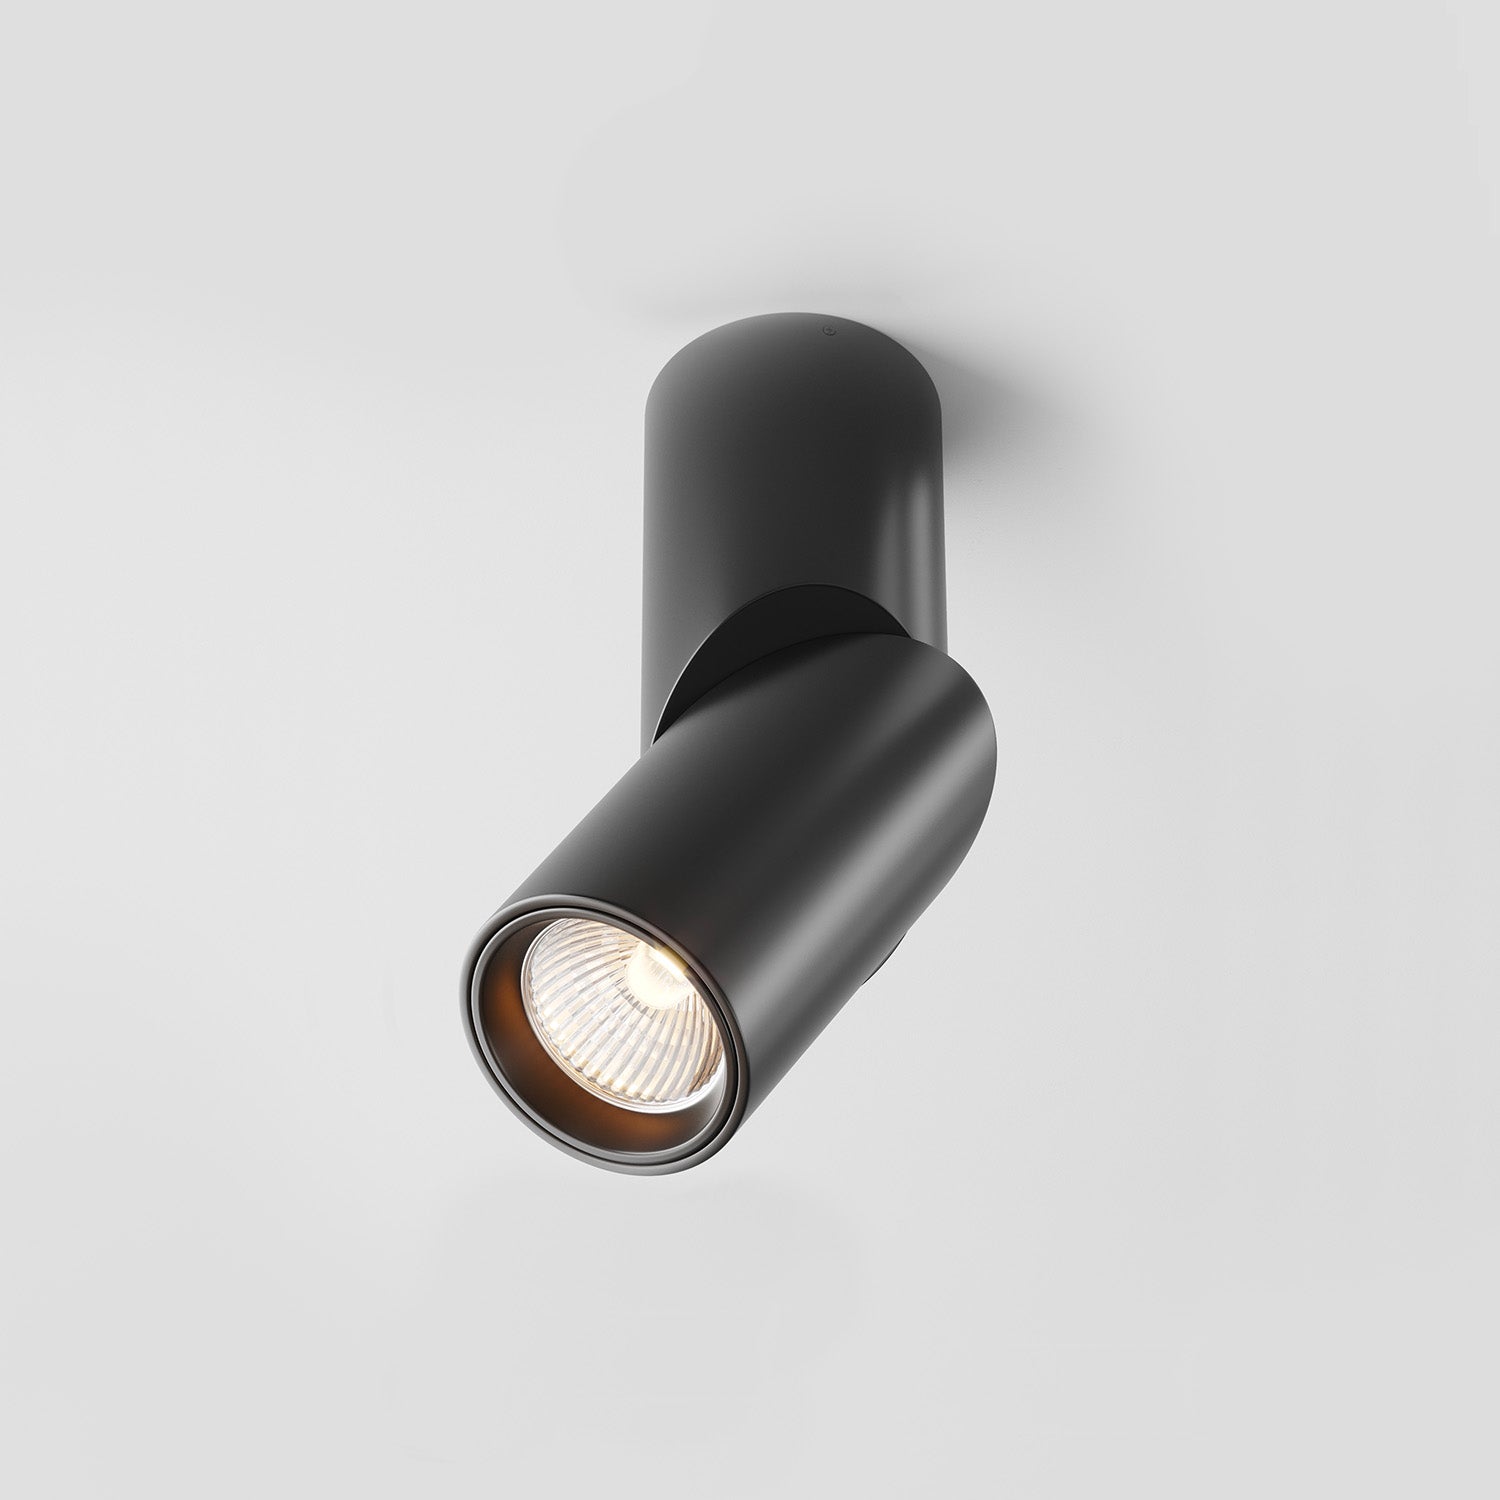 DAFNE - Black or white surface-mounted spotlight, living room design